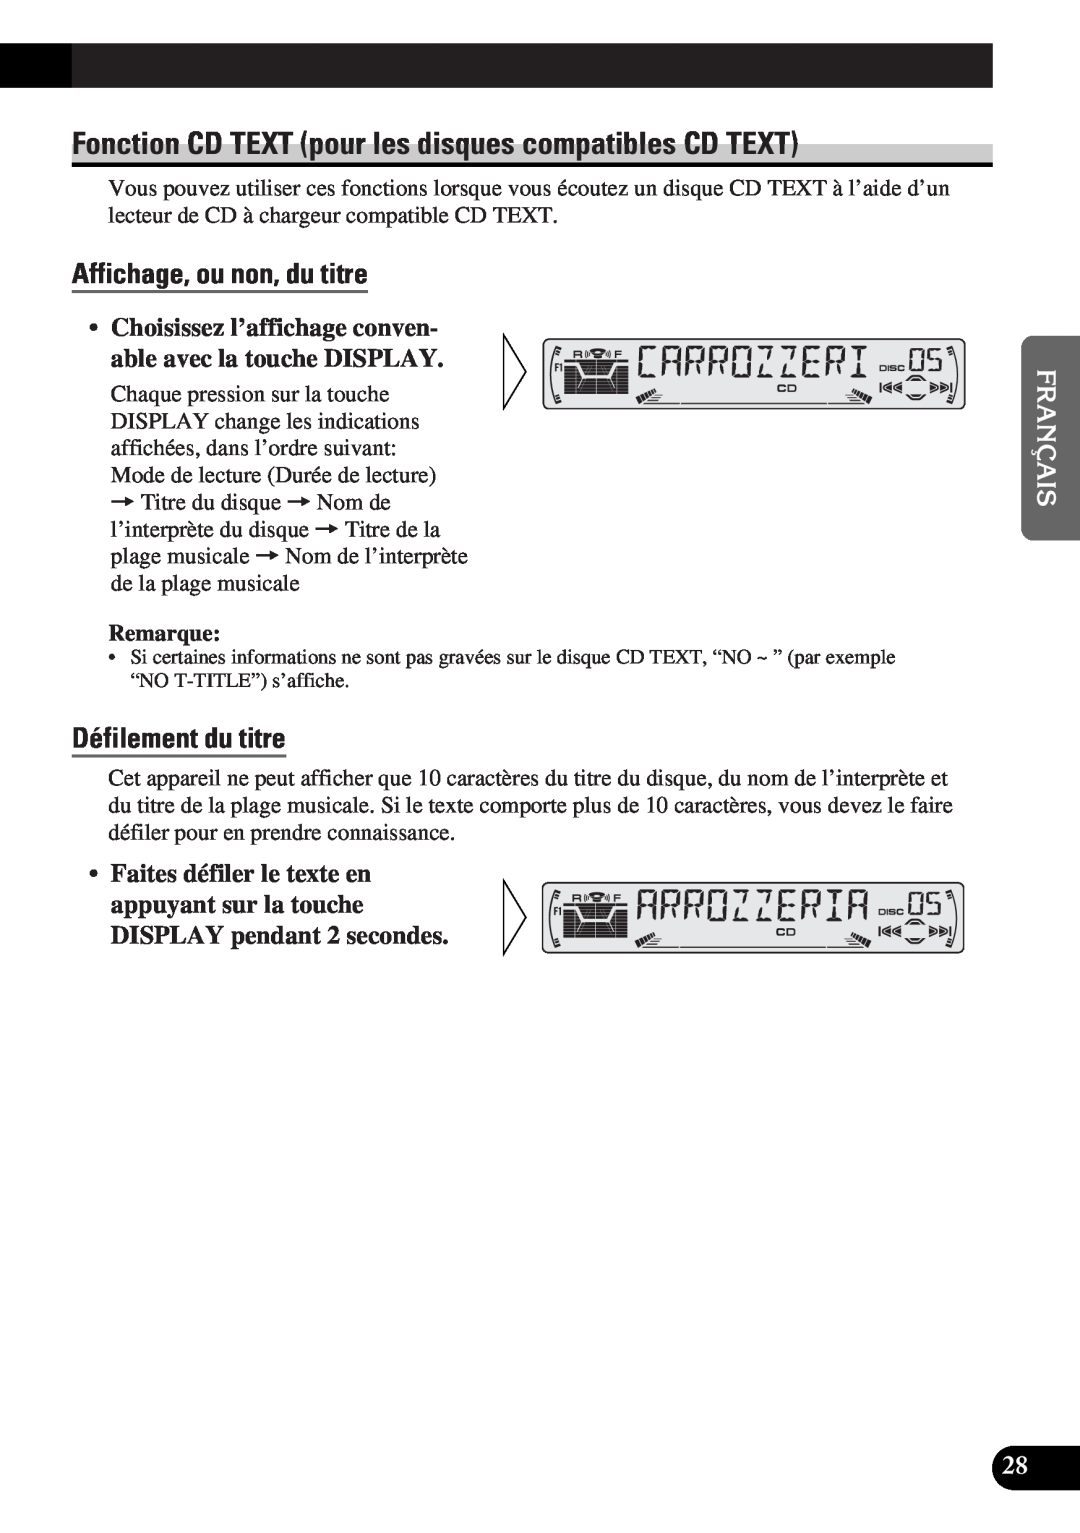 Pioneer DEH-P4300 operation manual Affichage, ou non, du titre, Défilement du titre 